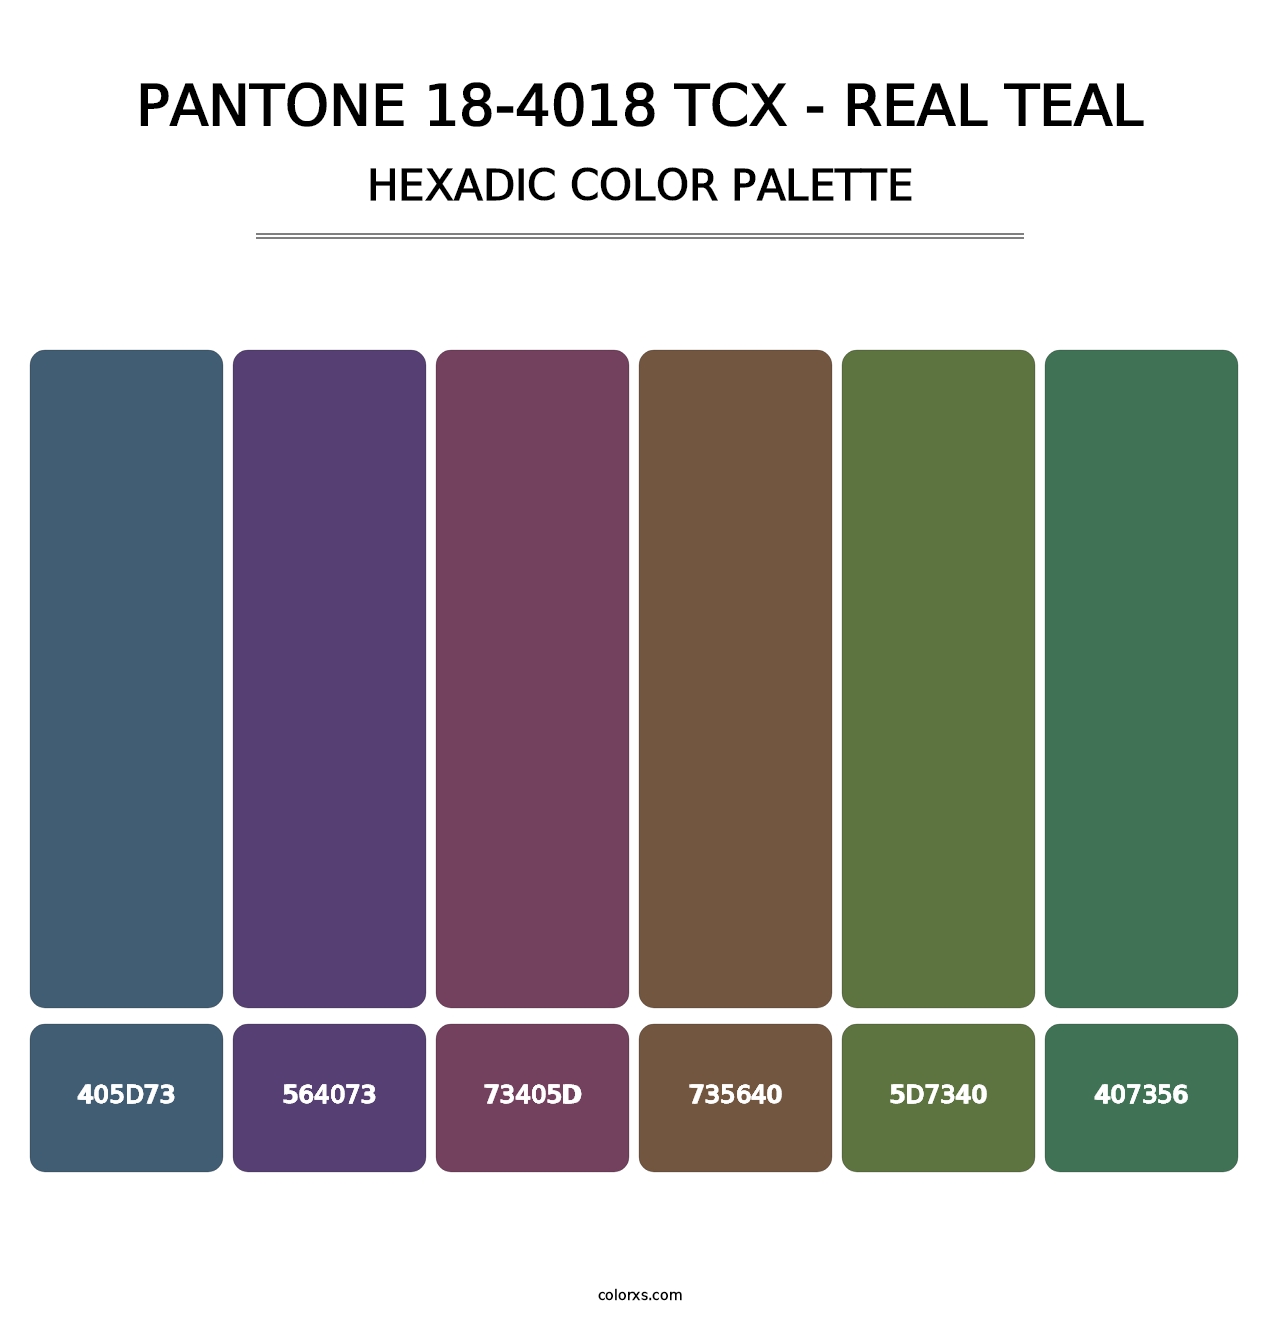 PANTONE 18-4018 TCX - Real Teal - Hexadic Color Palette